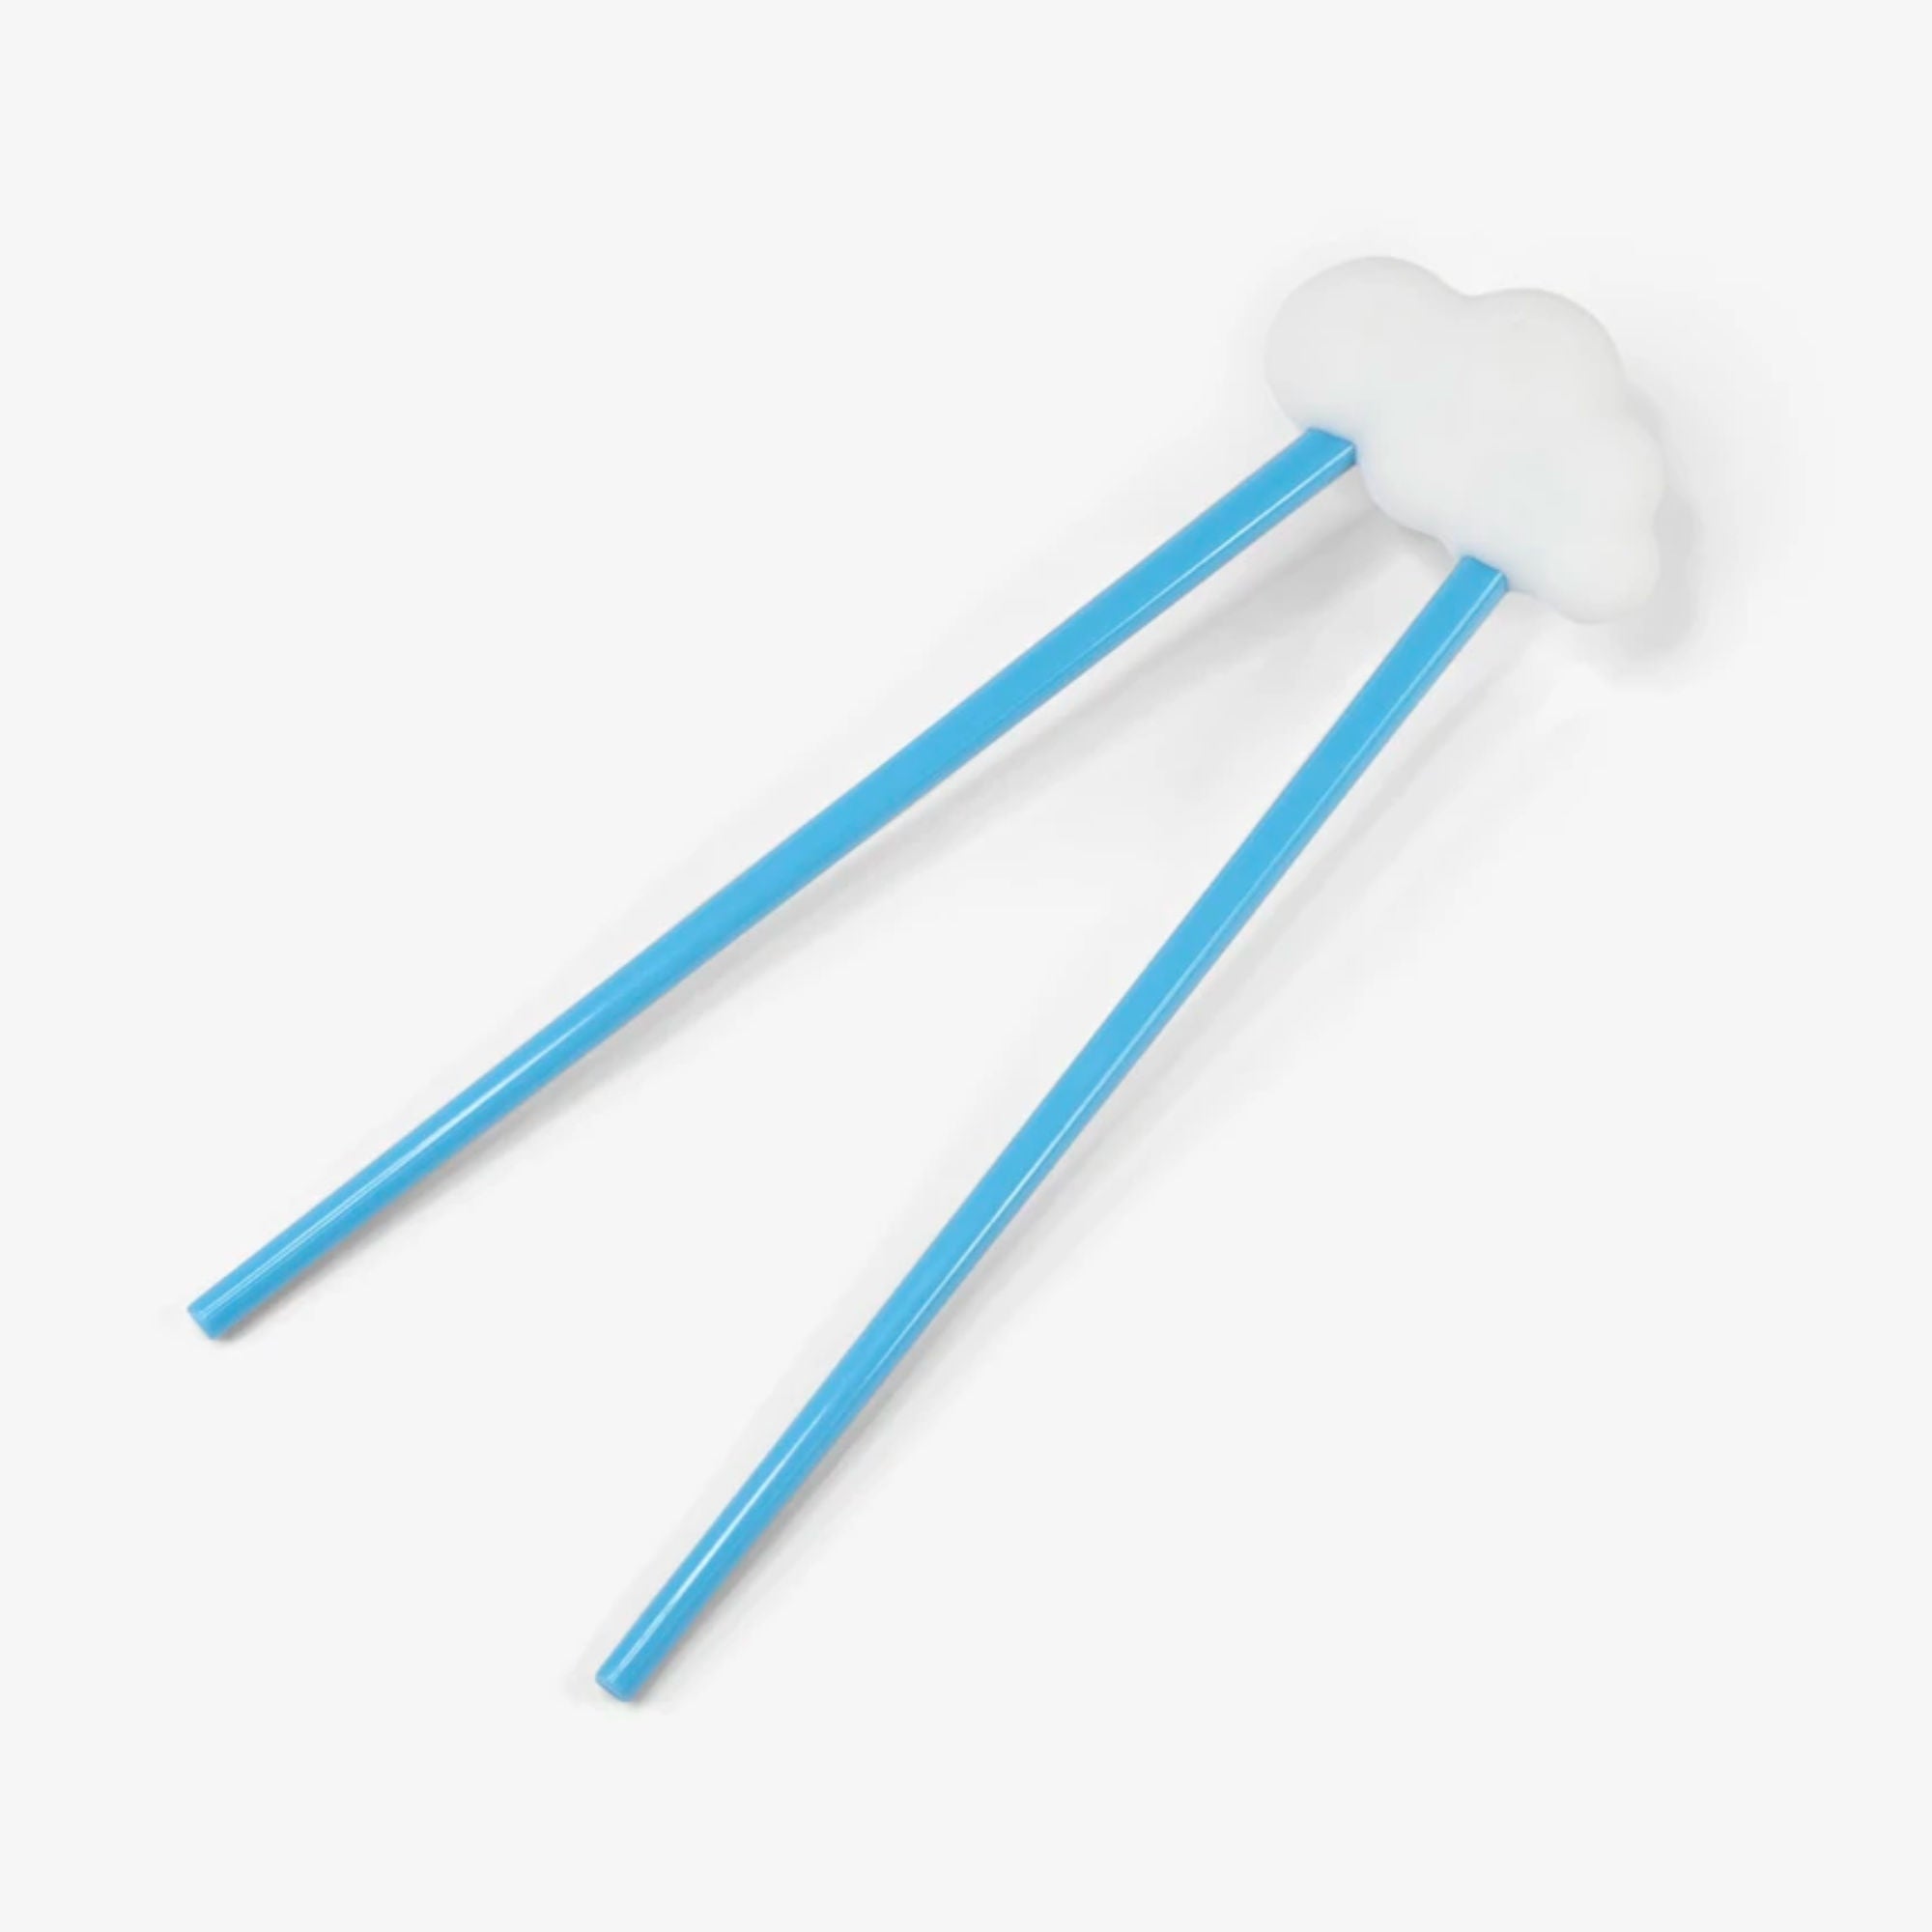 Day Dreamer Cloud chopsticks, blue